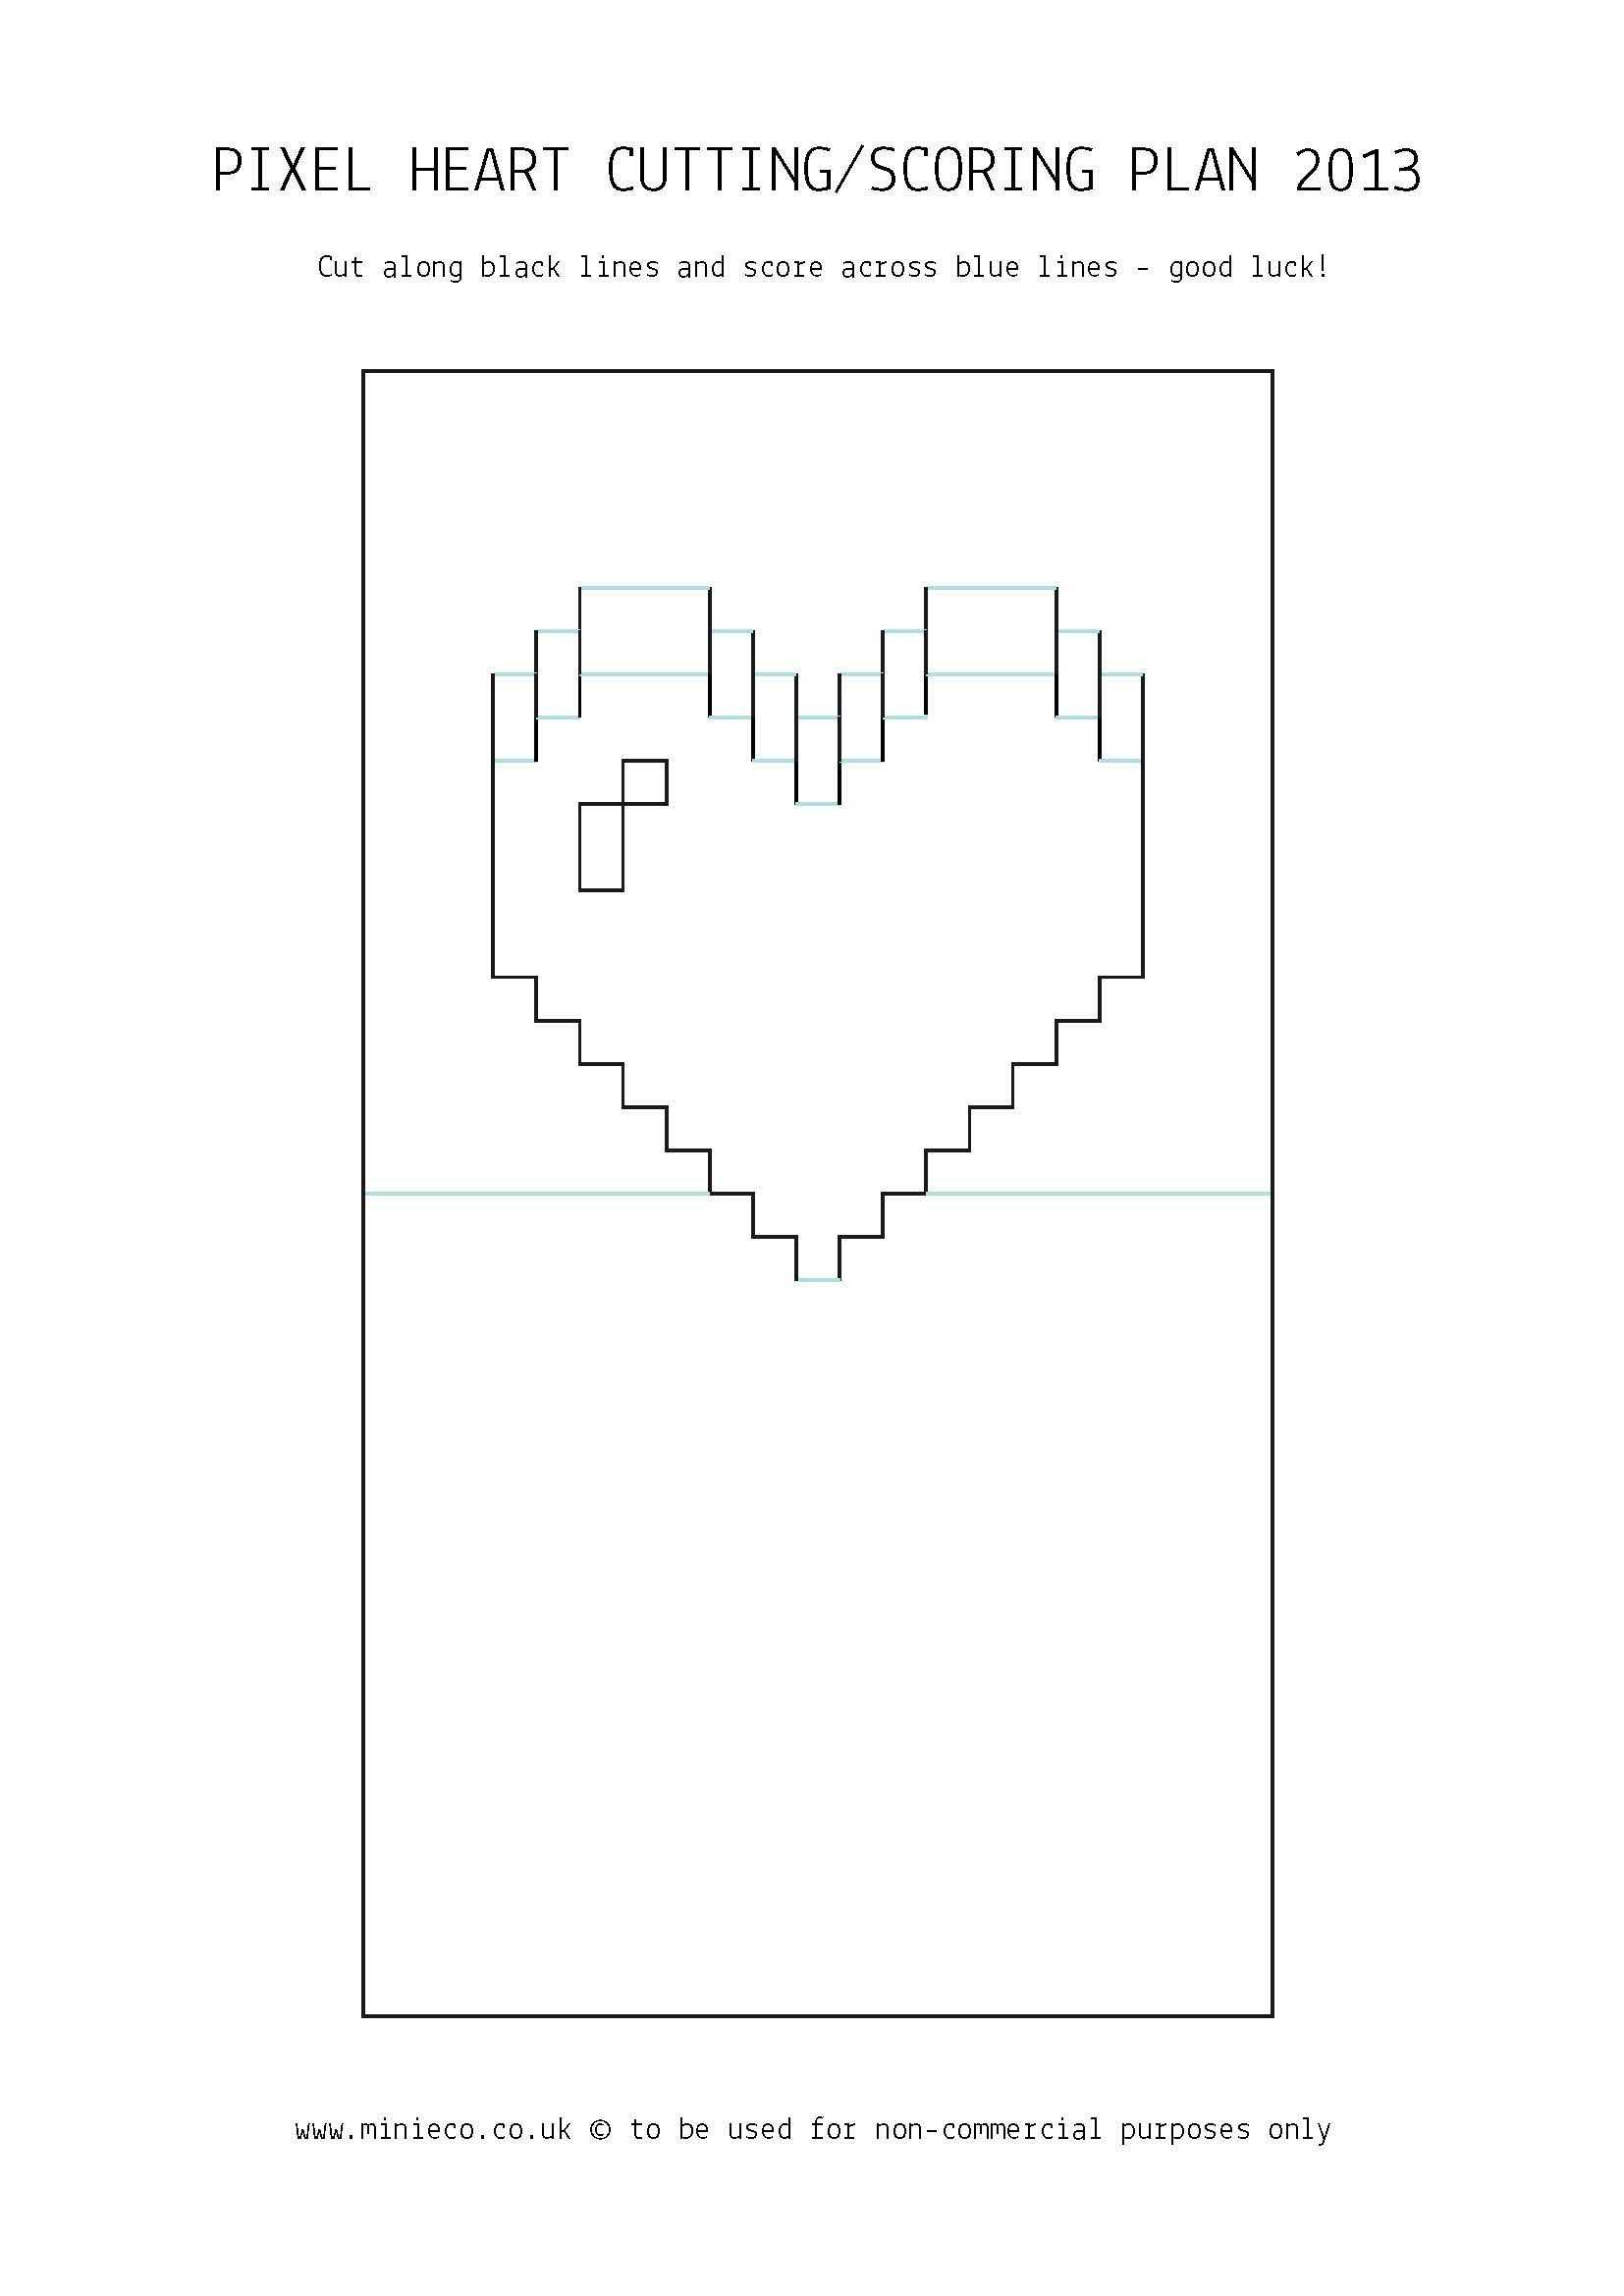 Pixel Heart Pop Up Card | Pop Up Card Templates, Heart Pop Within Pixel Heart Pop Up Card Template